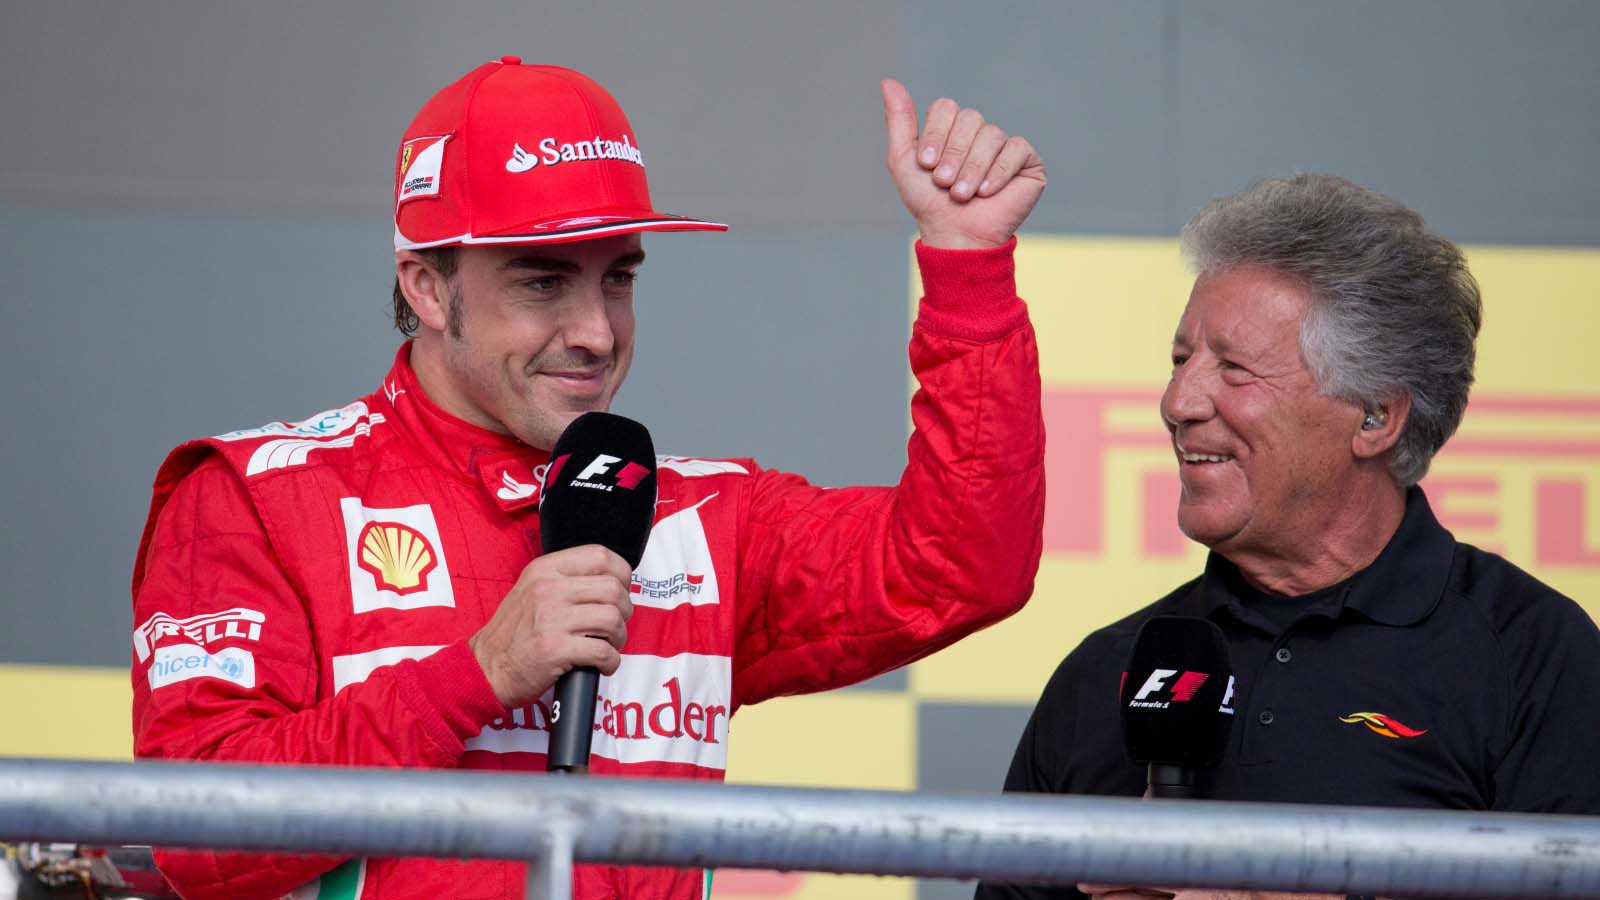 Mario Andretti revela la alineación ideal de pilotos de F1 para Andretti Global : PlanetF1